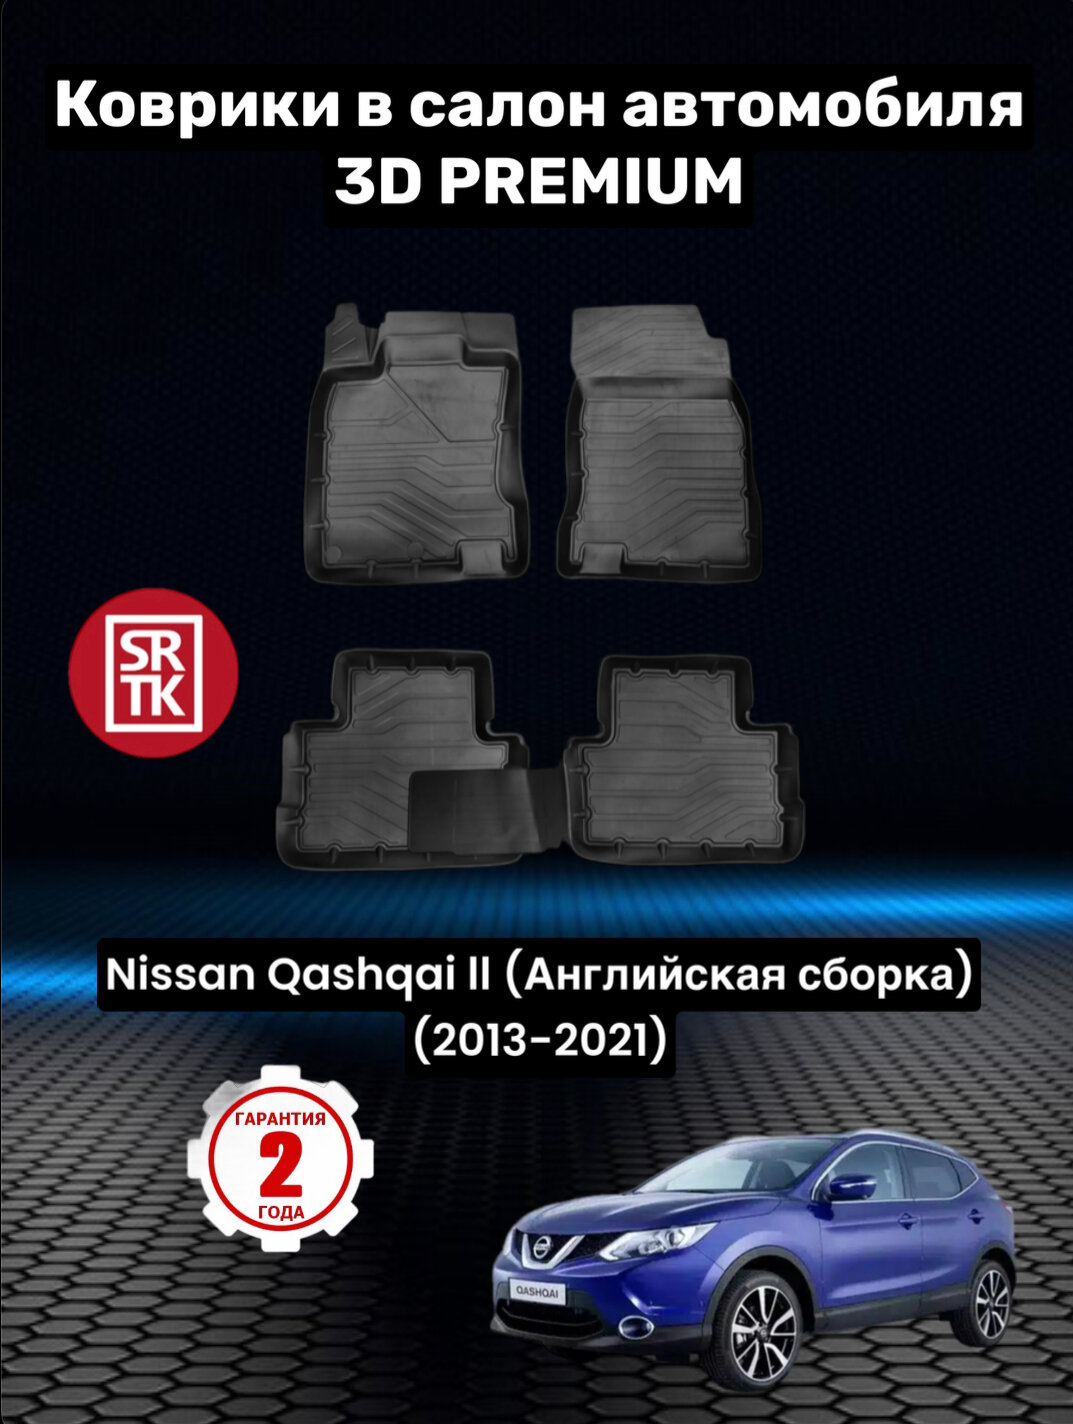 Коврики резиновые в салон для Ниссан Кашкай 2 англ. сборка / Nissan Qashqai II (2013-2021) 3D PREMIUM SRTK (Саранск) комплект в салон